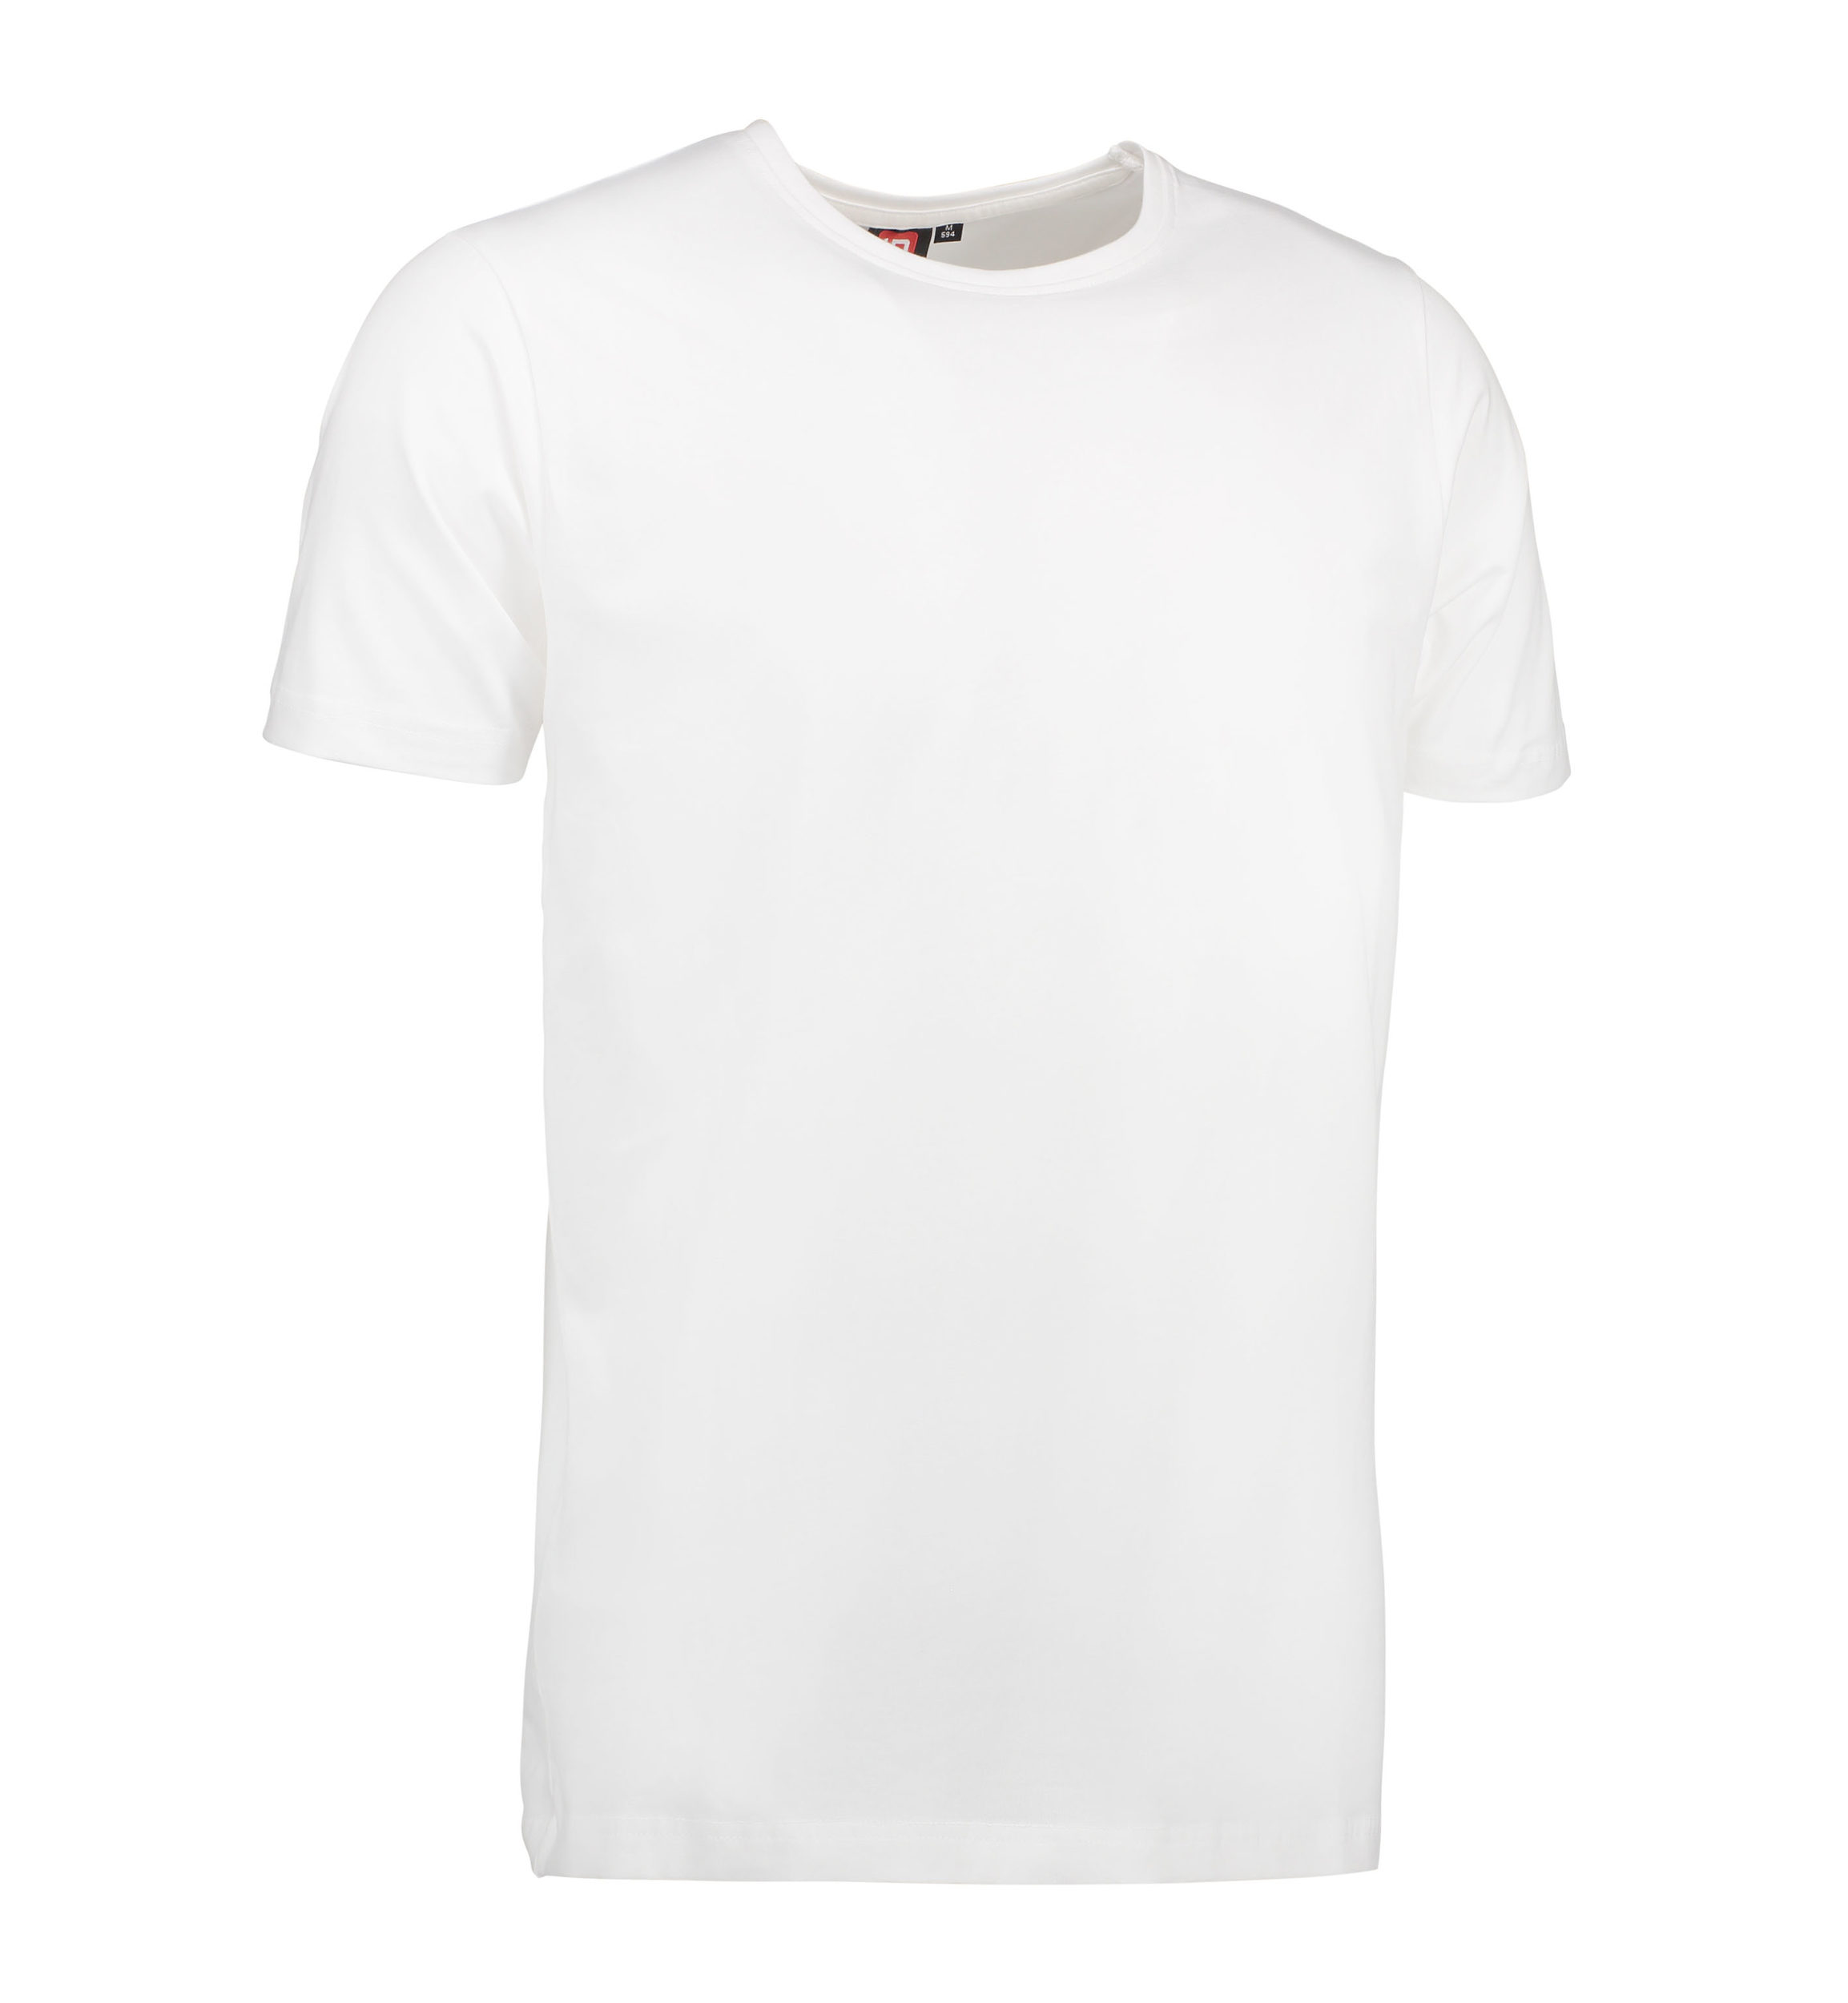 Billede af Stretch t-shirt til mænd i hvid - 2XL hos Sygeplejebutikken.dk